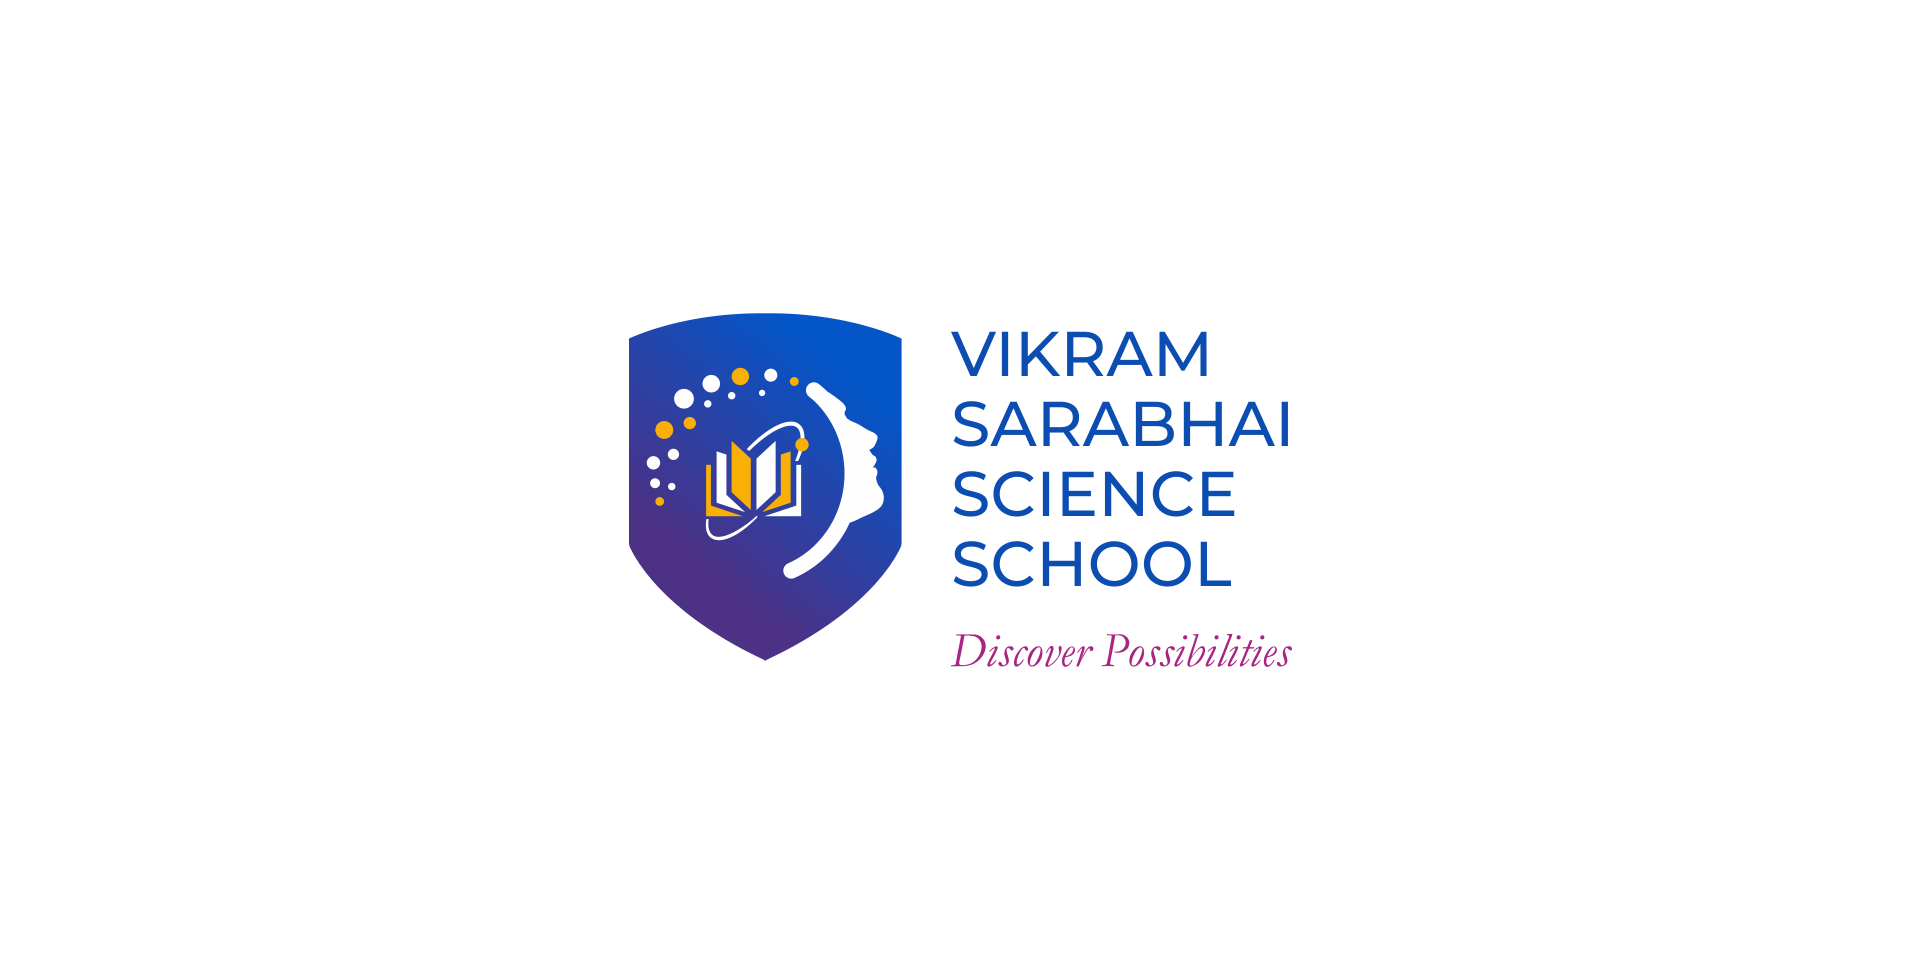 Vikram Sarabhai Science School